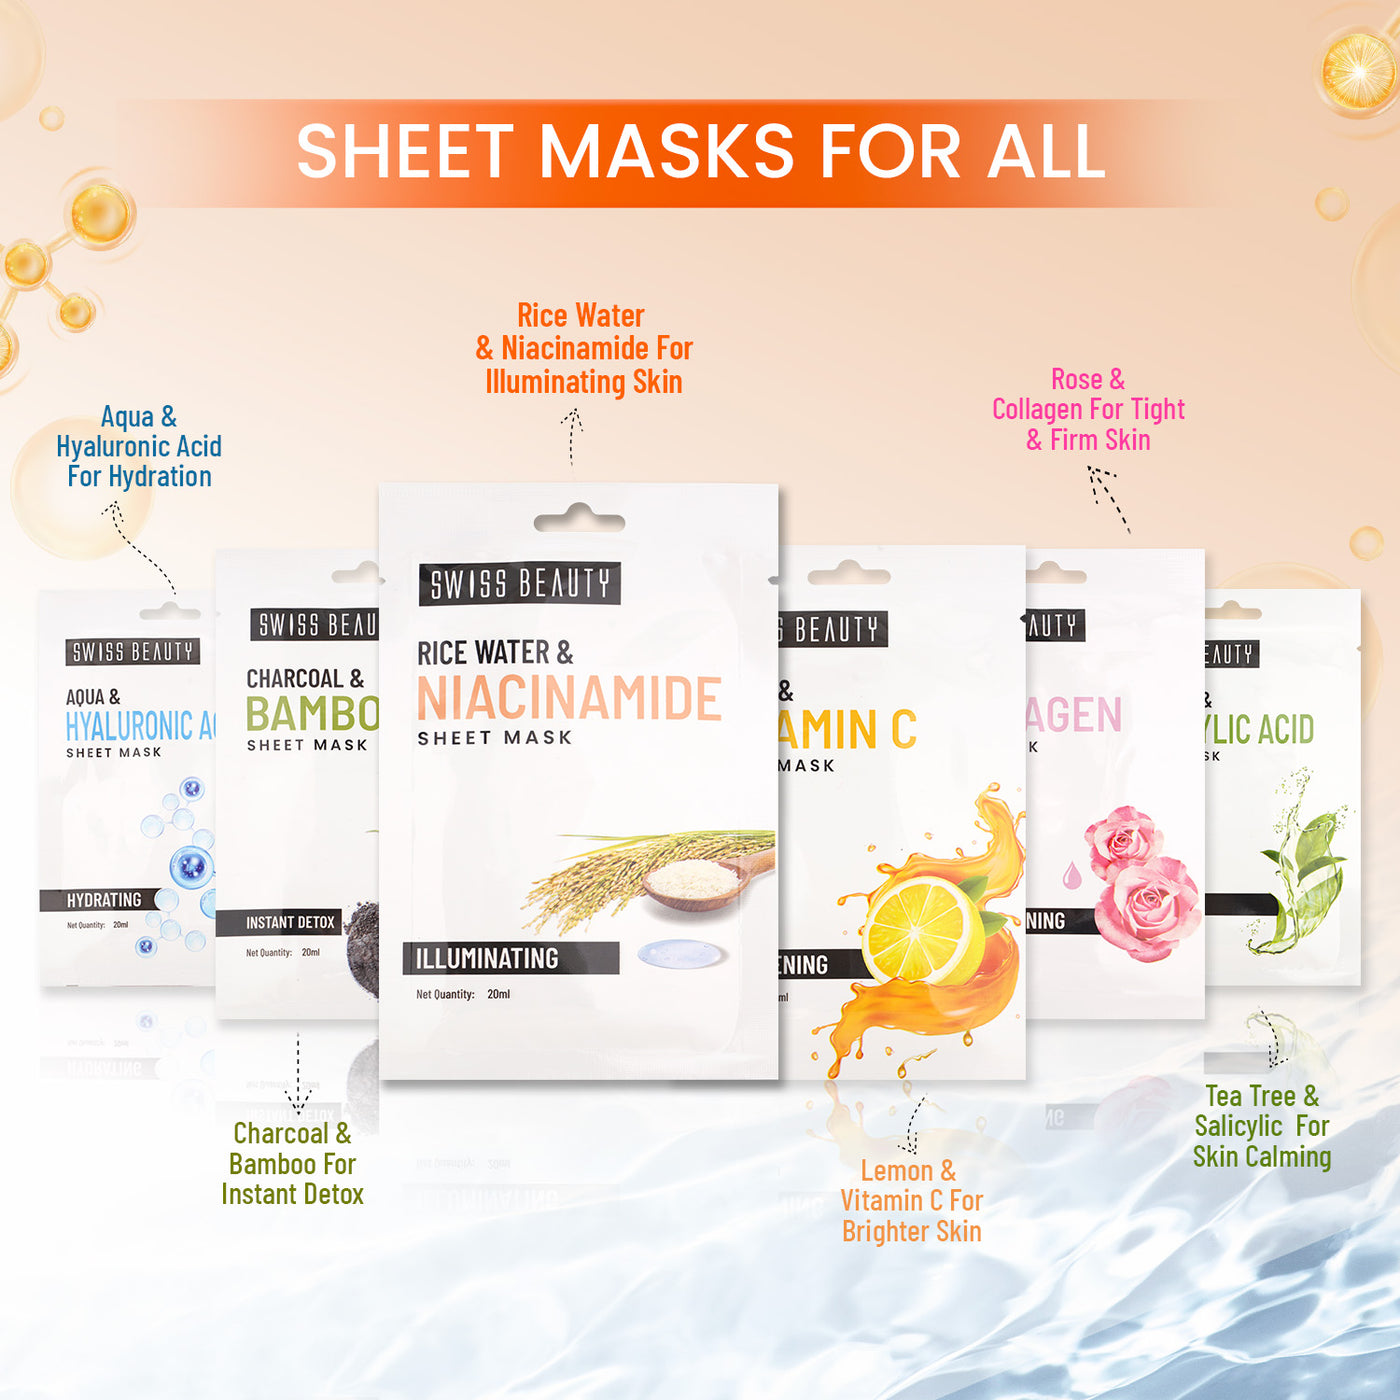 Rice Water & Niacinamide Sheet Mask